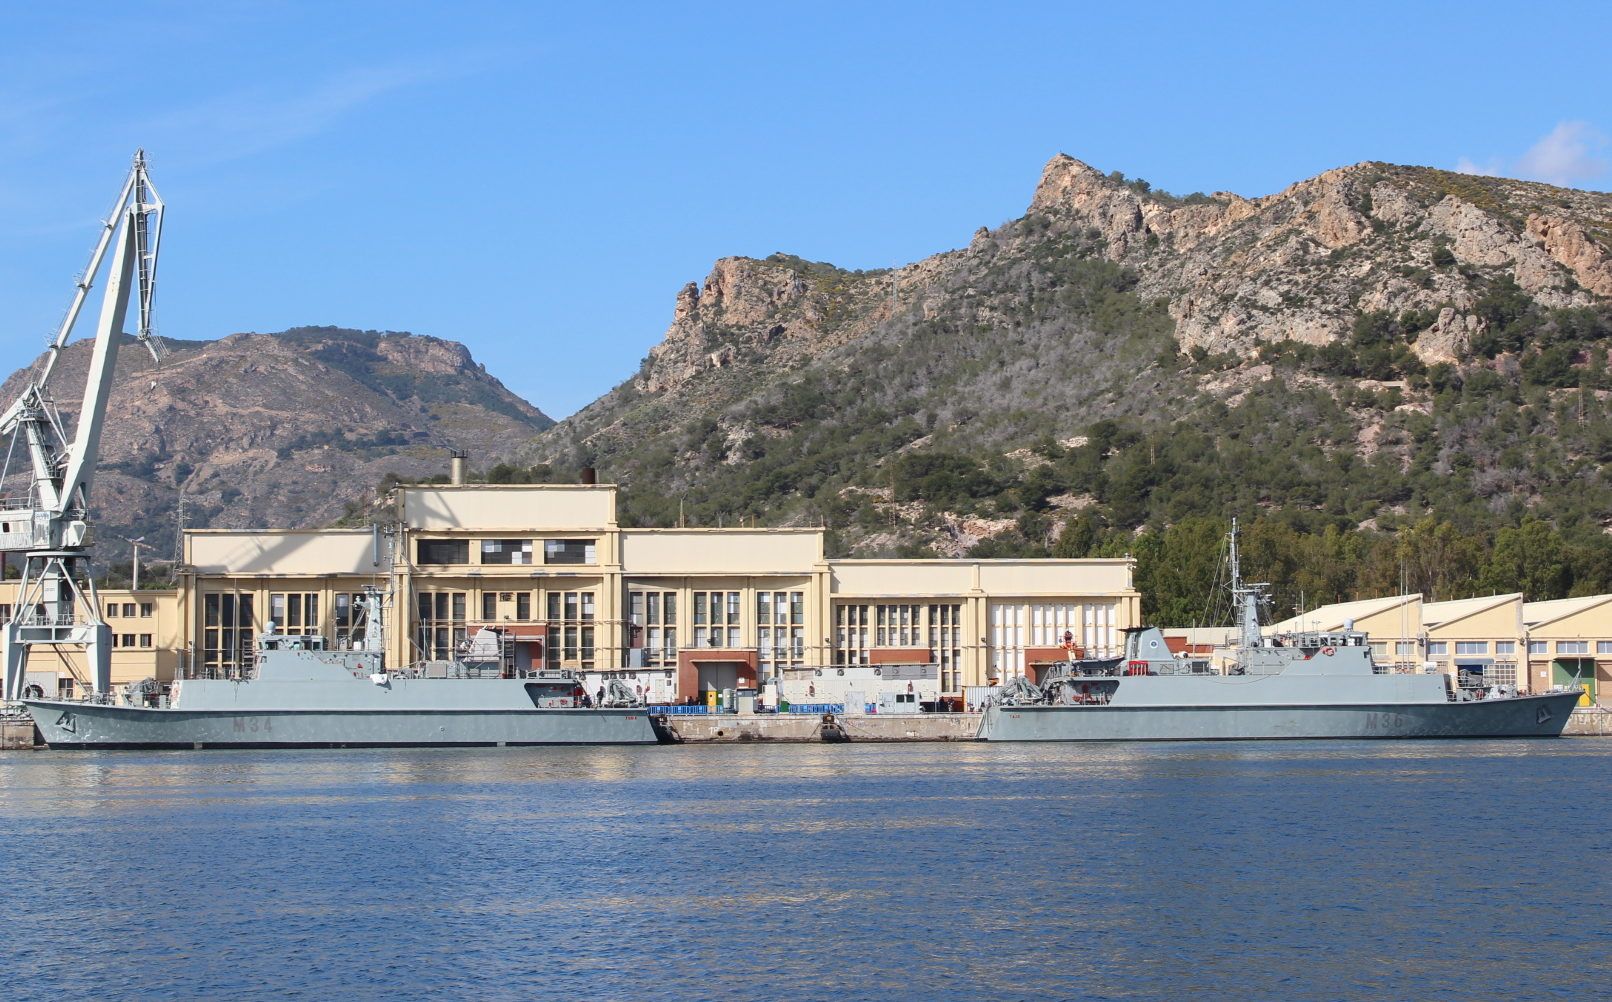 The Naval Base at Cartagena